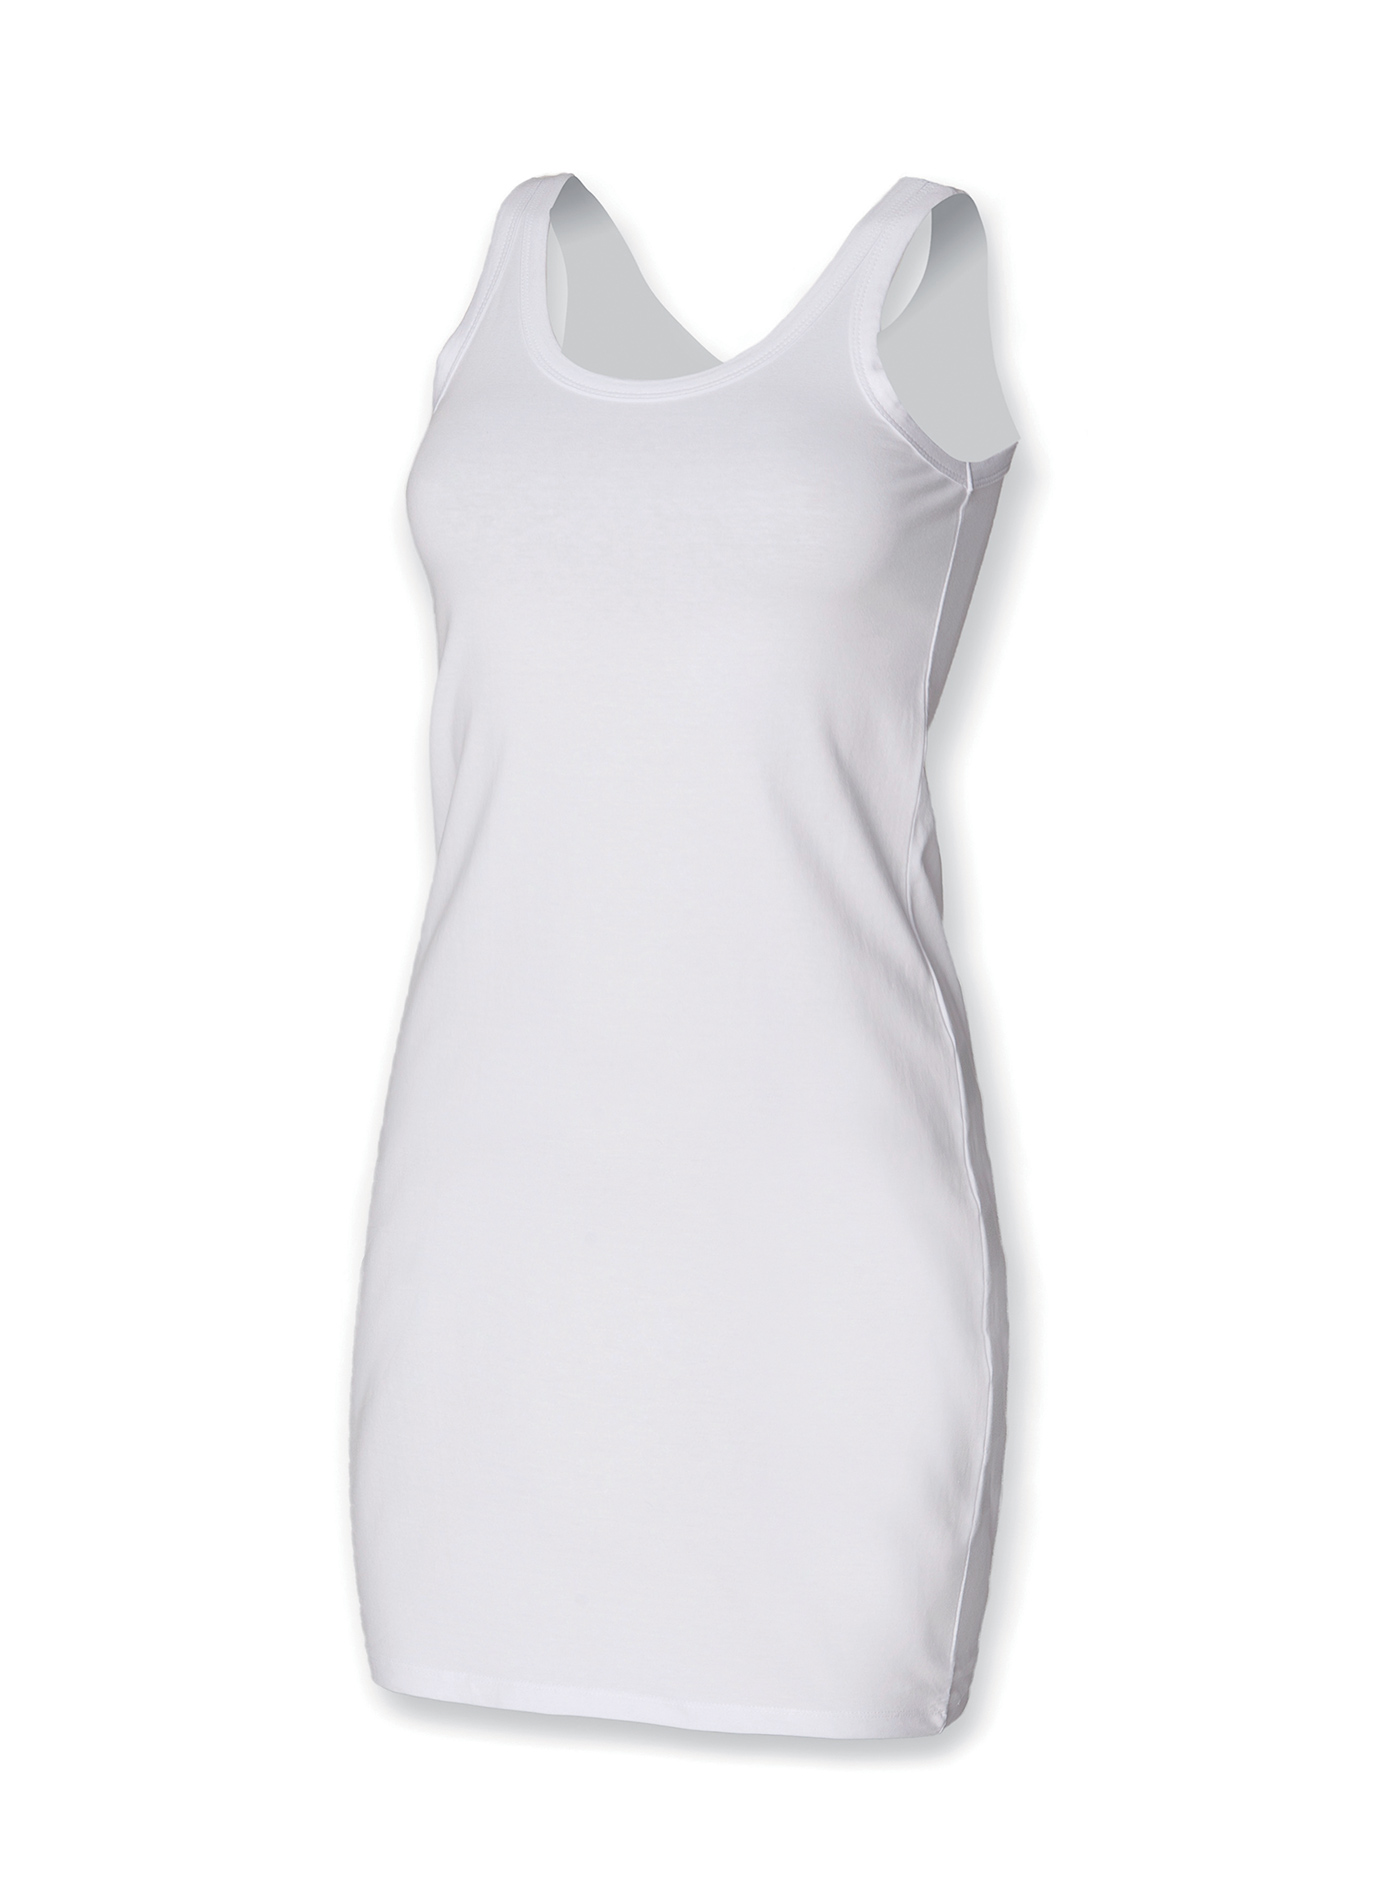 Dámské strečové šaty Skinnifit - Bílá M